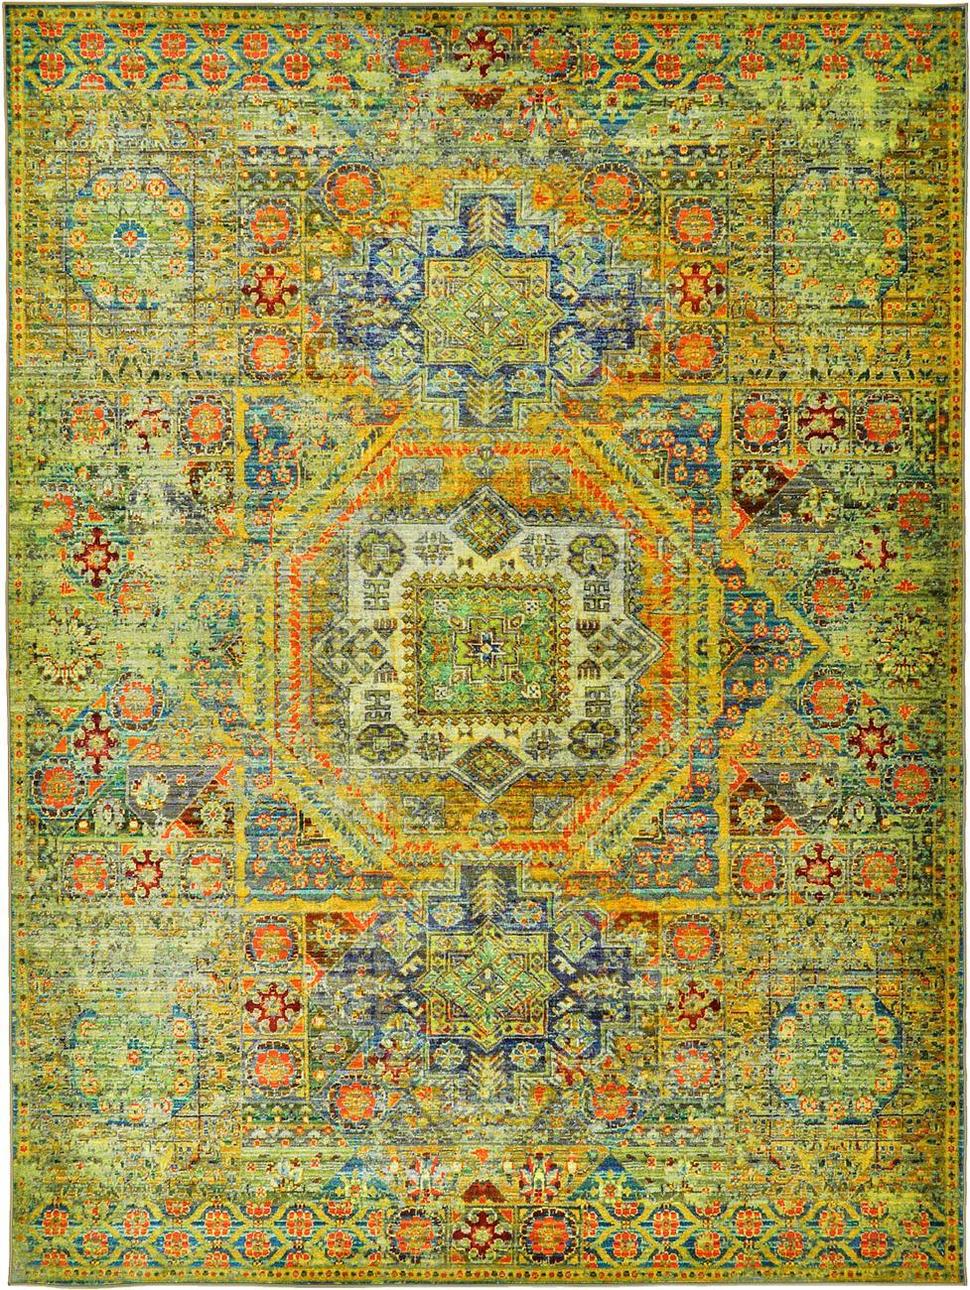 8d-green-turkish-eclat-area-rug.jpg